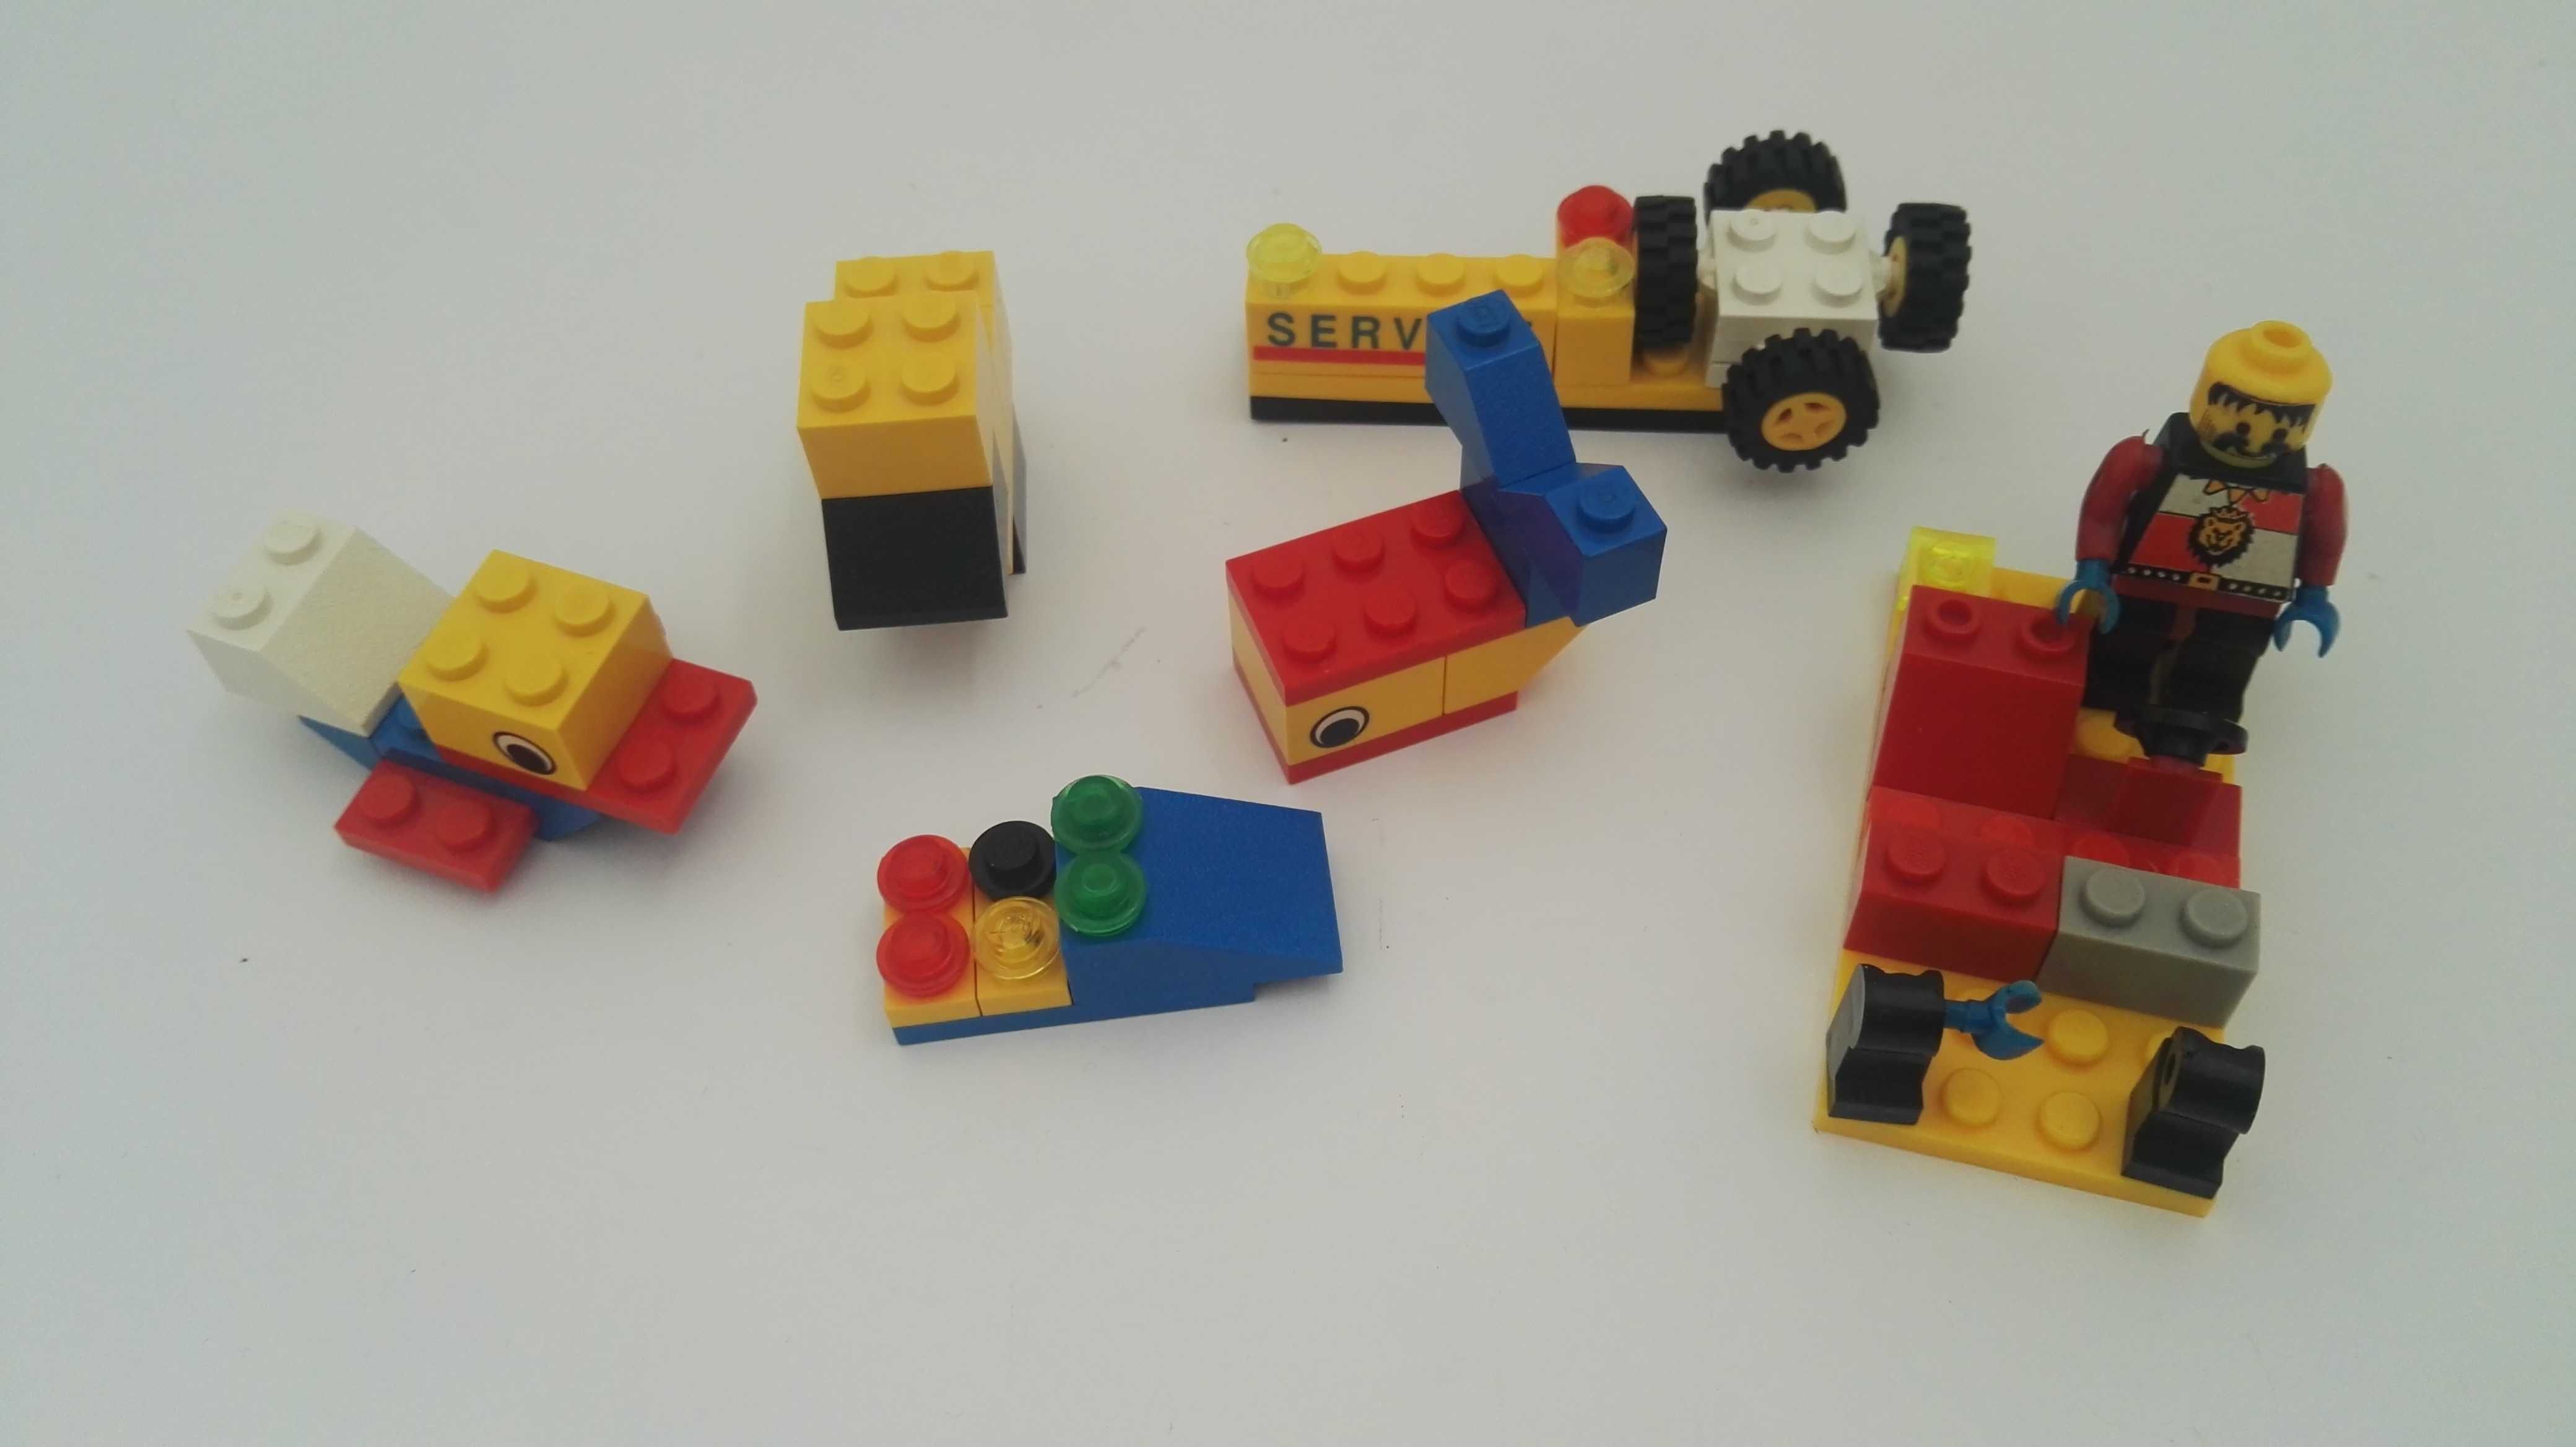 Фигурки Lego (Лего) “Волшебный сундучок” и Cobi (Коби).